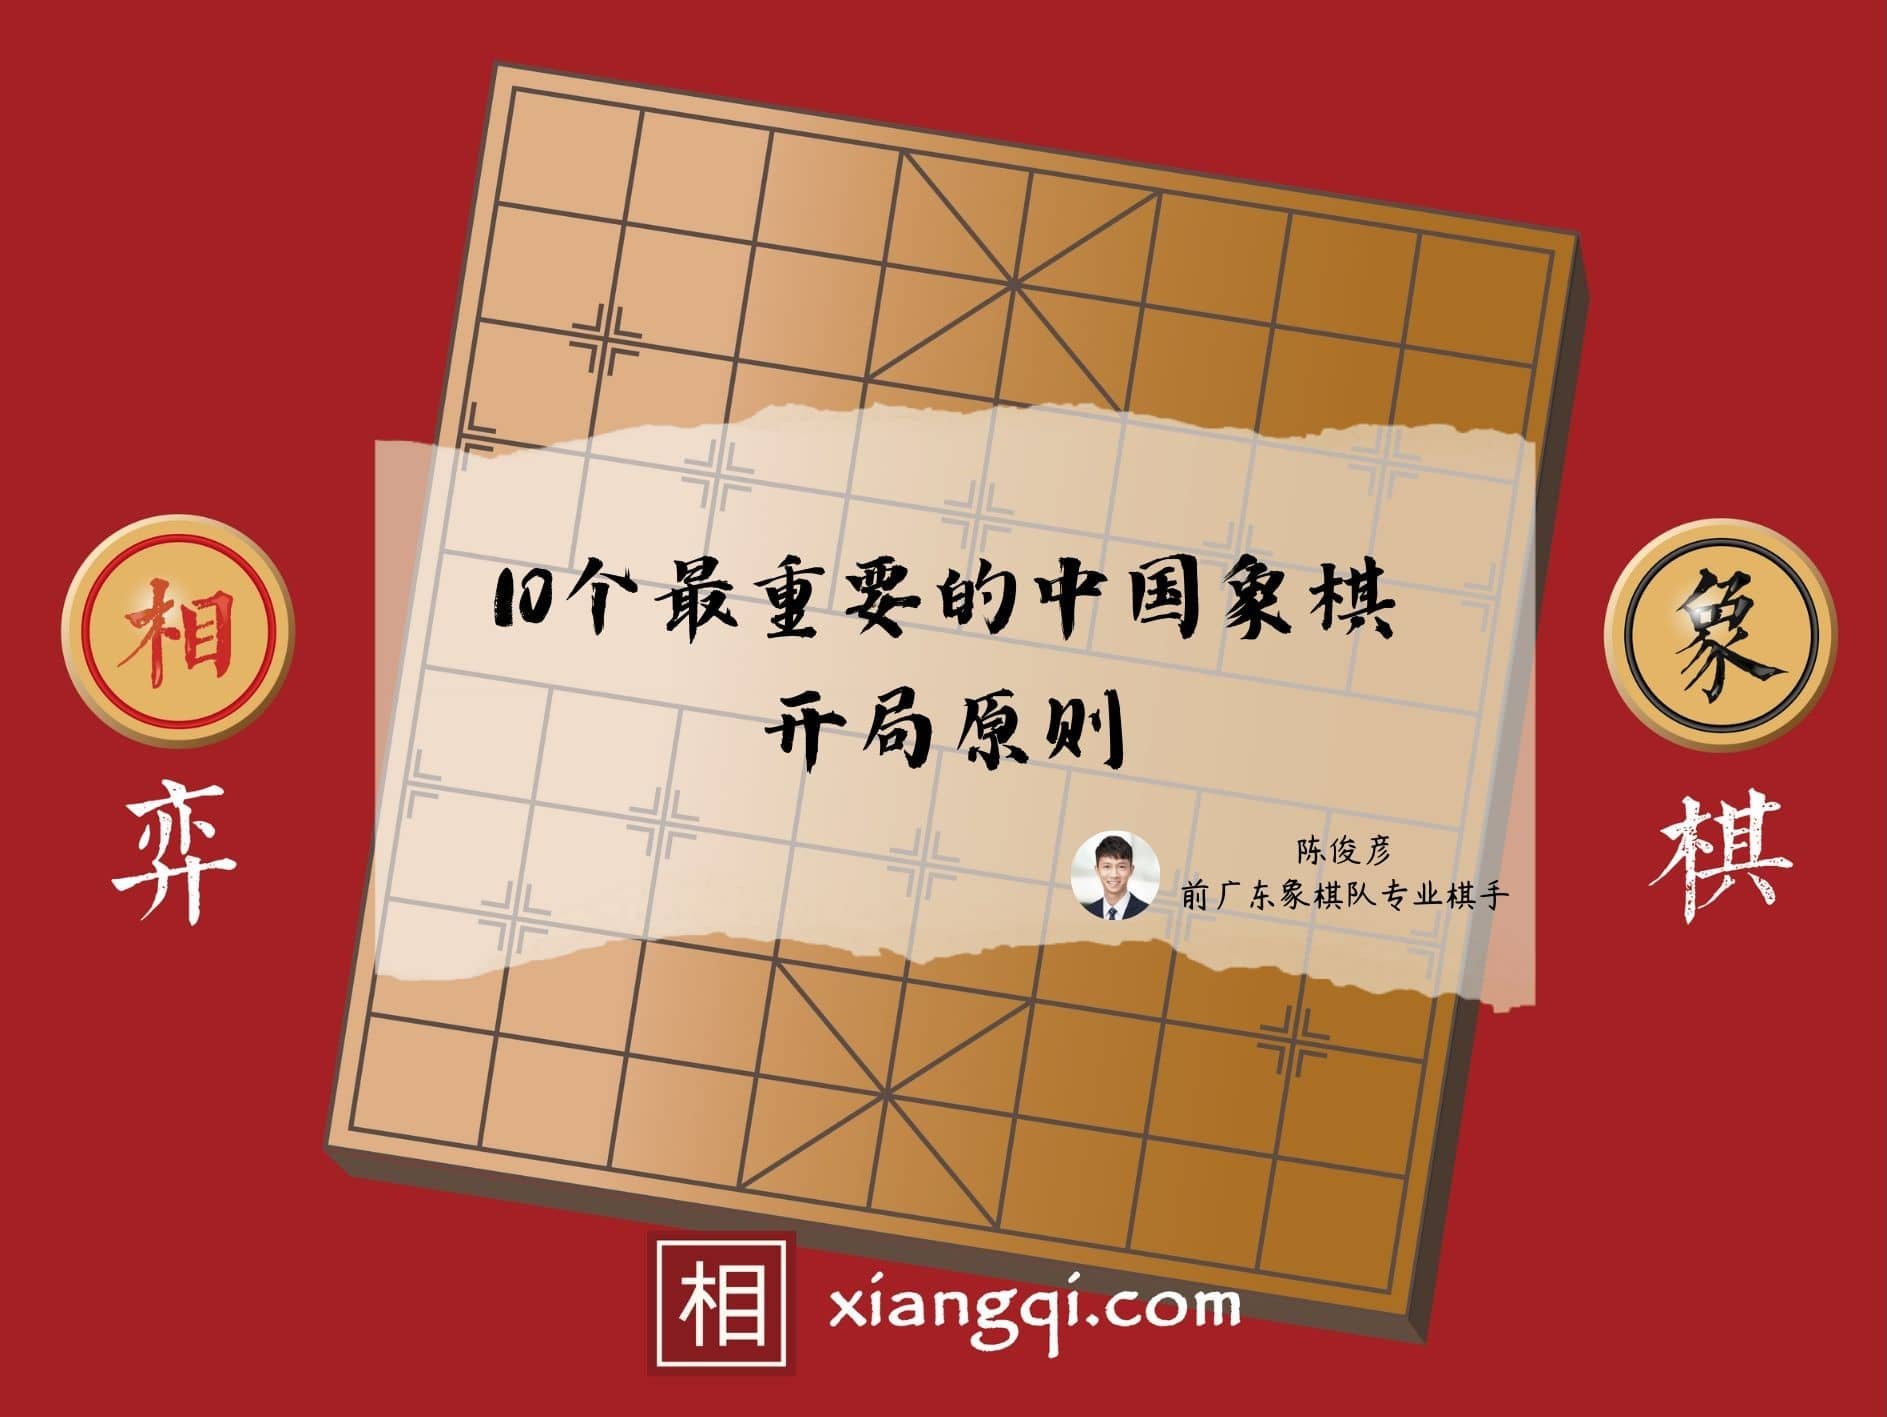 中国象棋教学文章- Xiangqi.com 相弈象棋